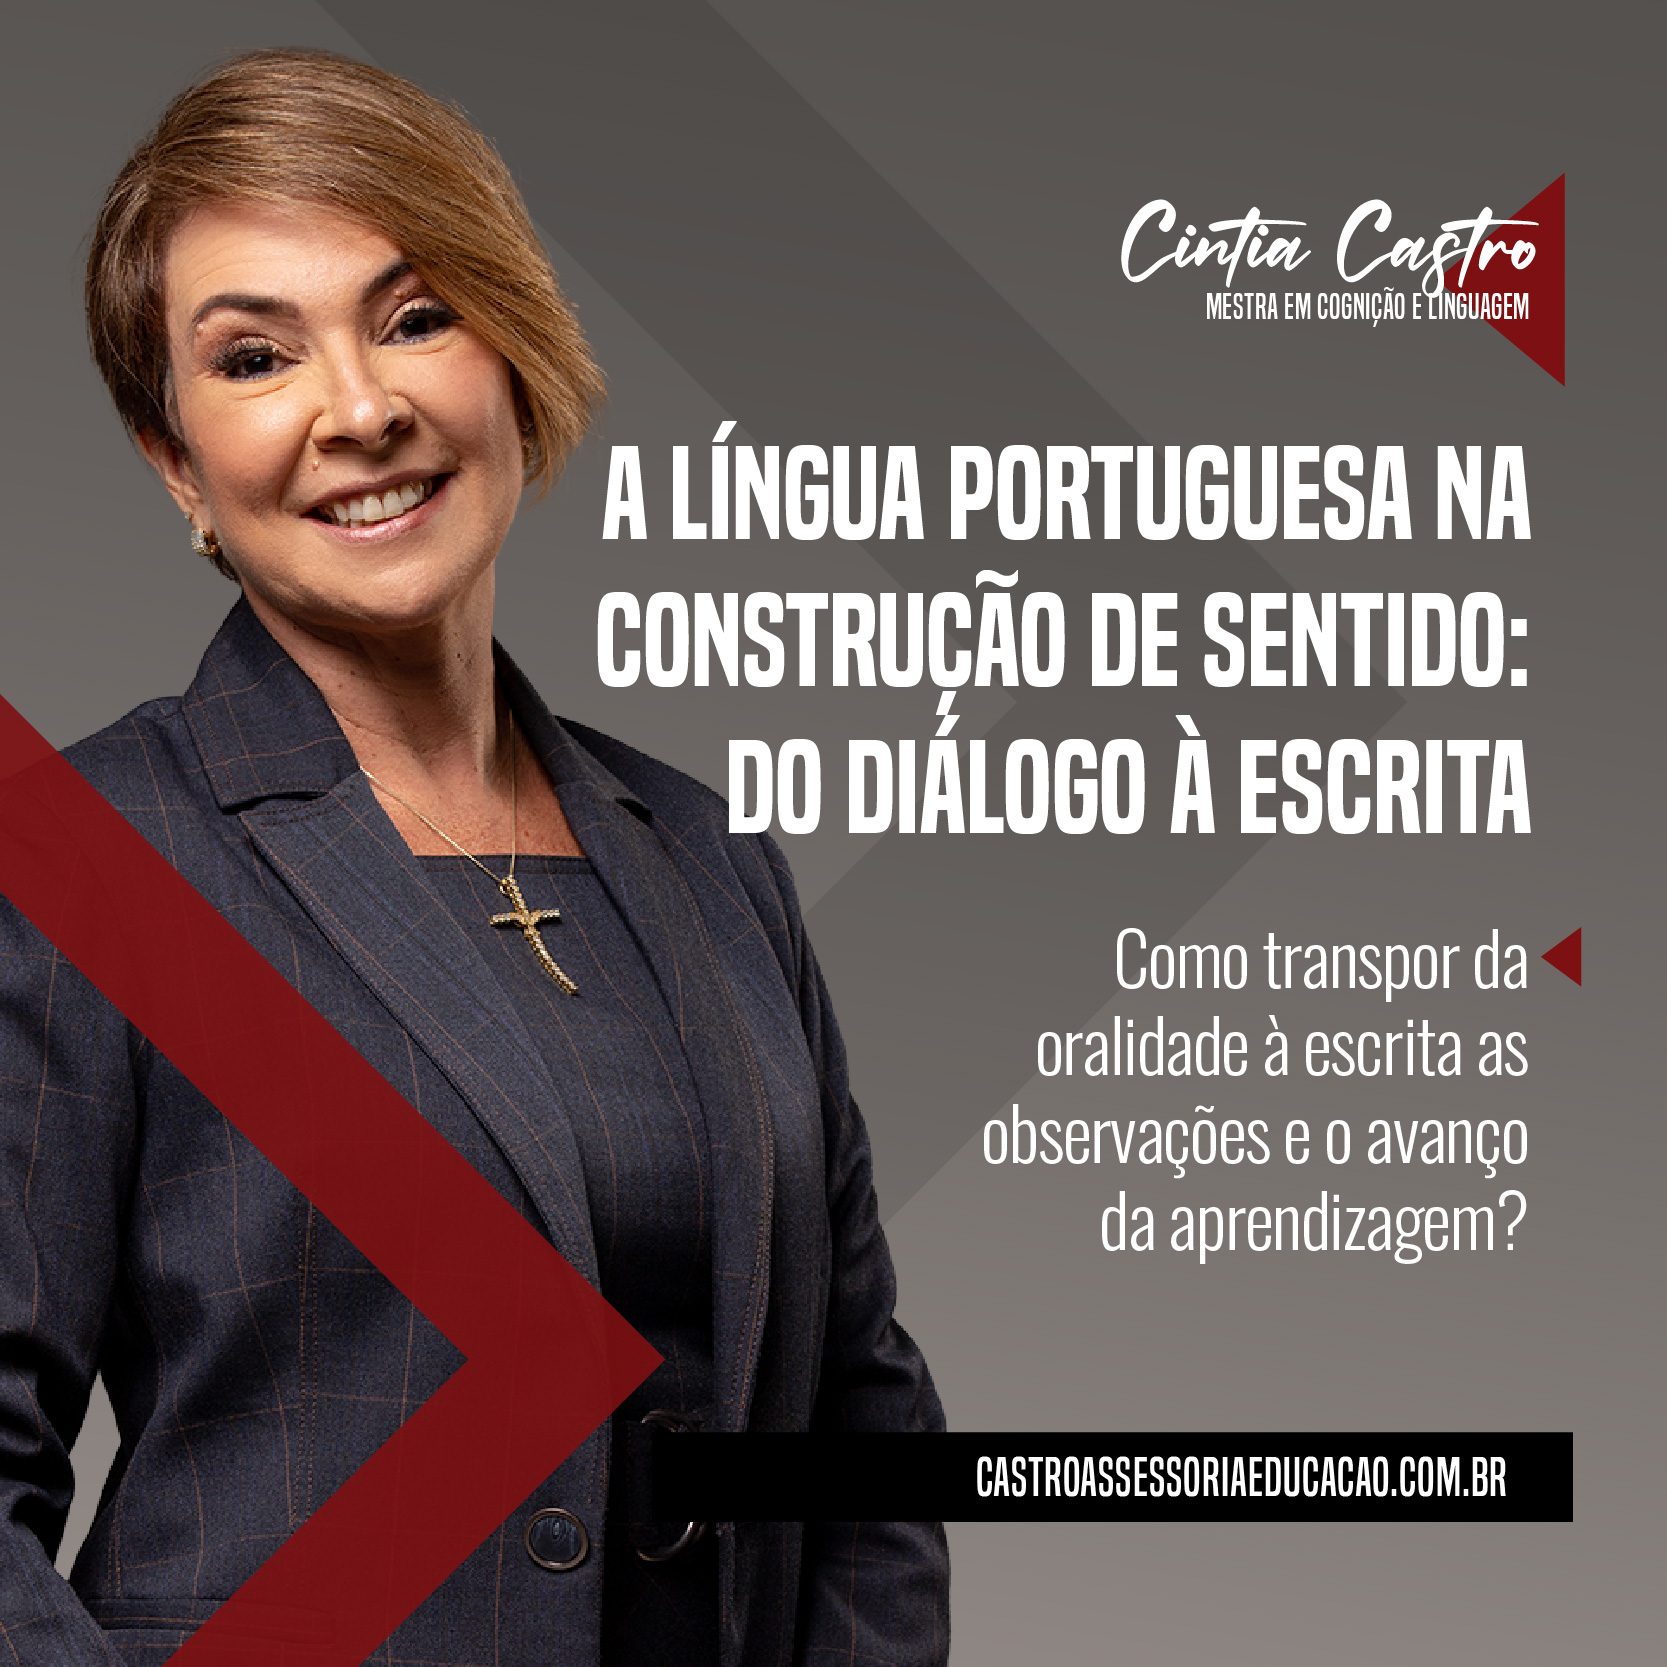 Cintia Castro - A LÍNGUA PORTUGUESA NA CONSTRUÇÃO DE SENTIDO: DO DIÁLOGO À ESCRITA